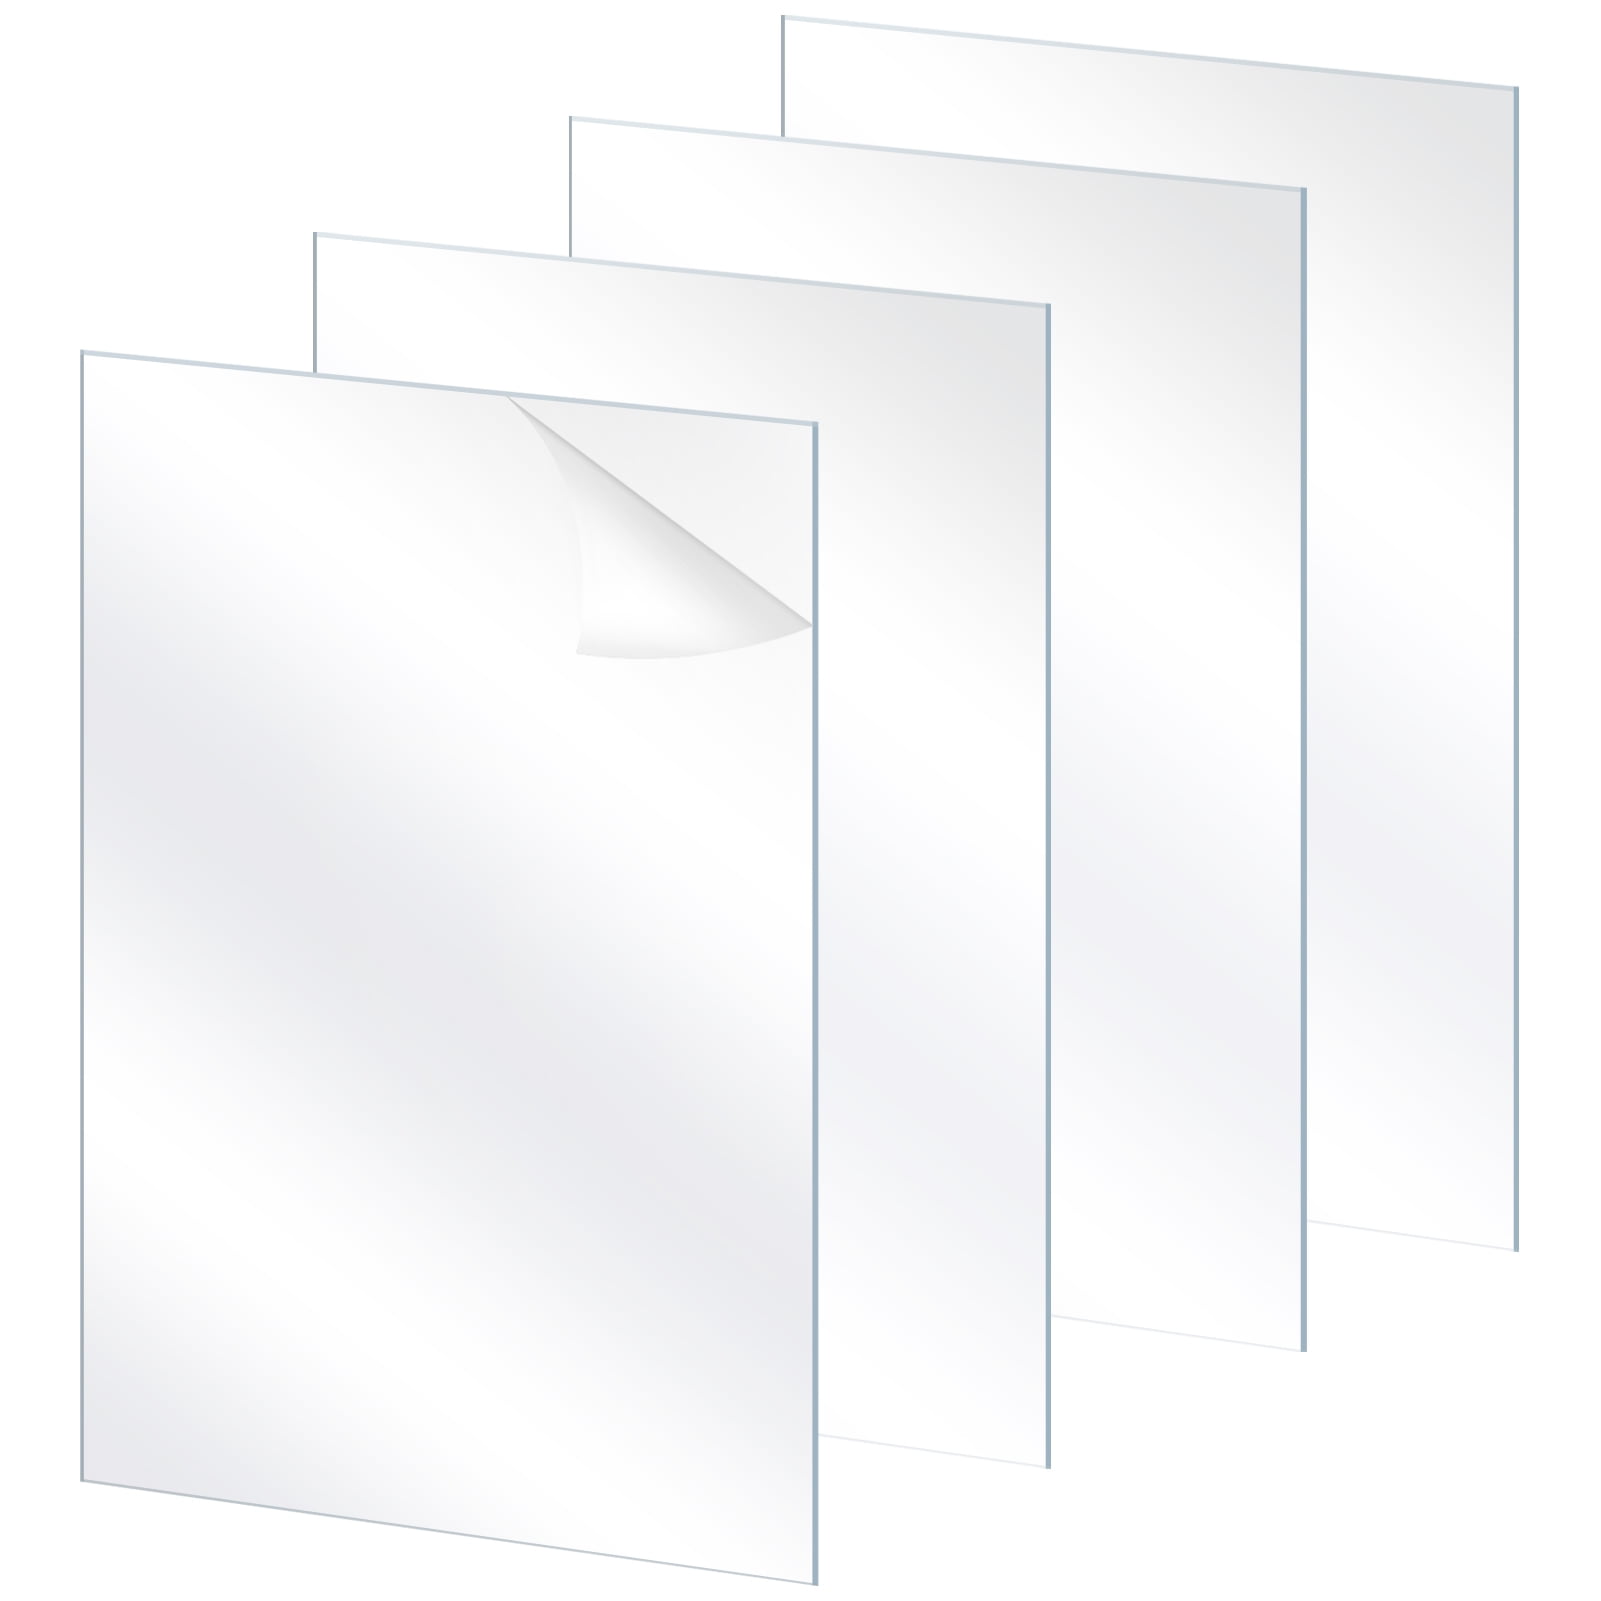 White styrene sheet